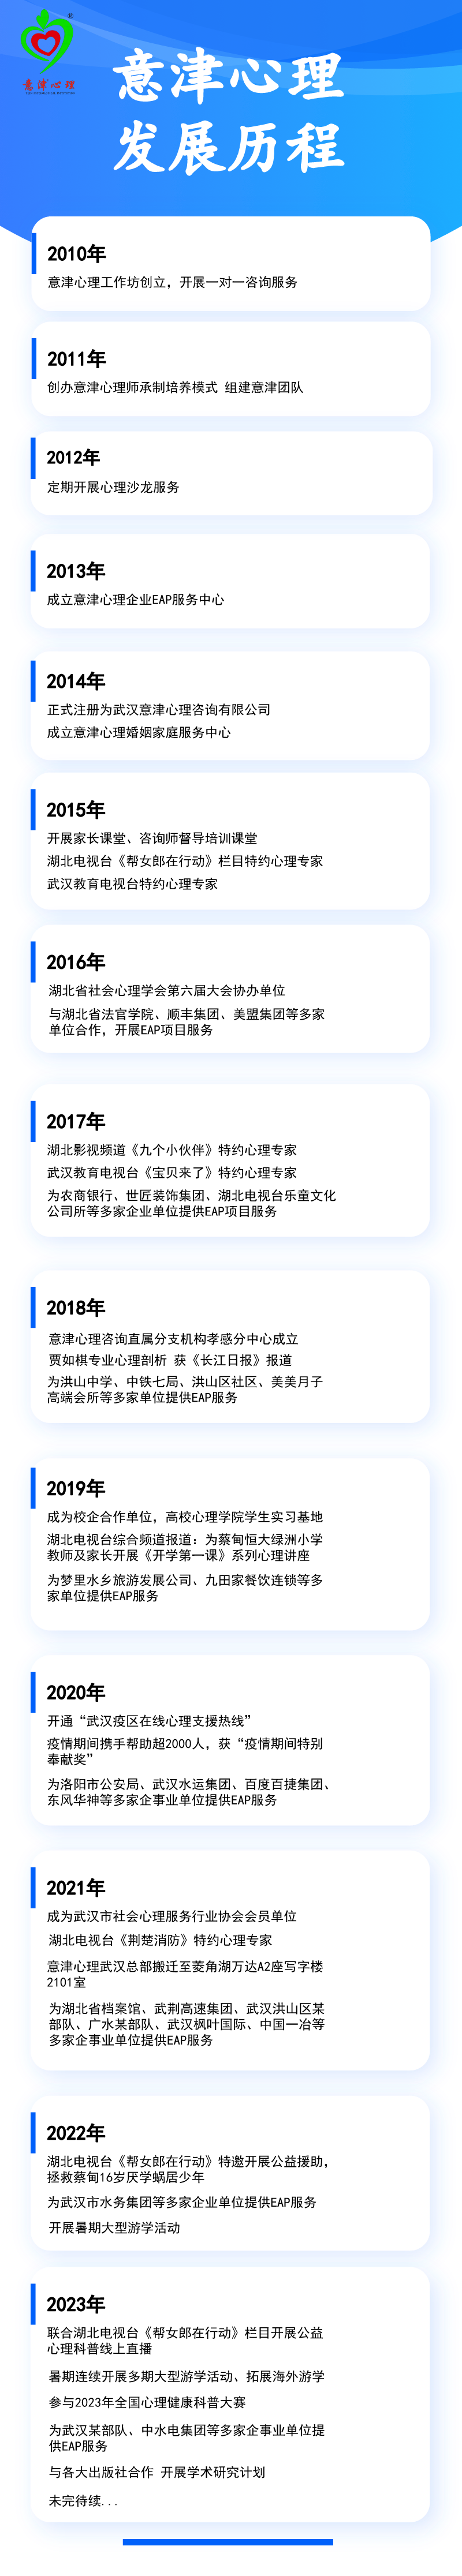 2024-02-02 意津心理发展历程 陈若菡.png